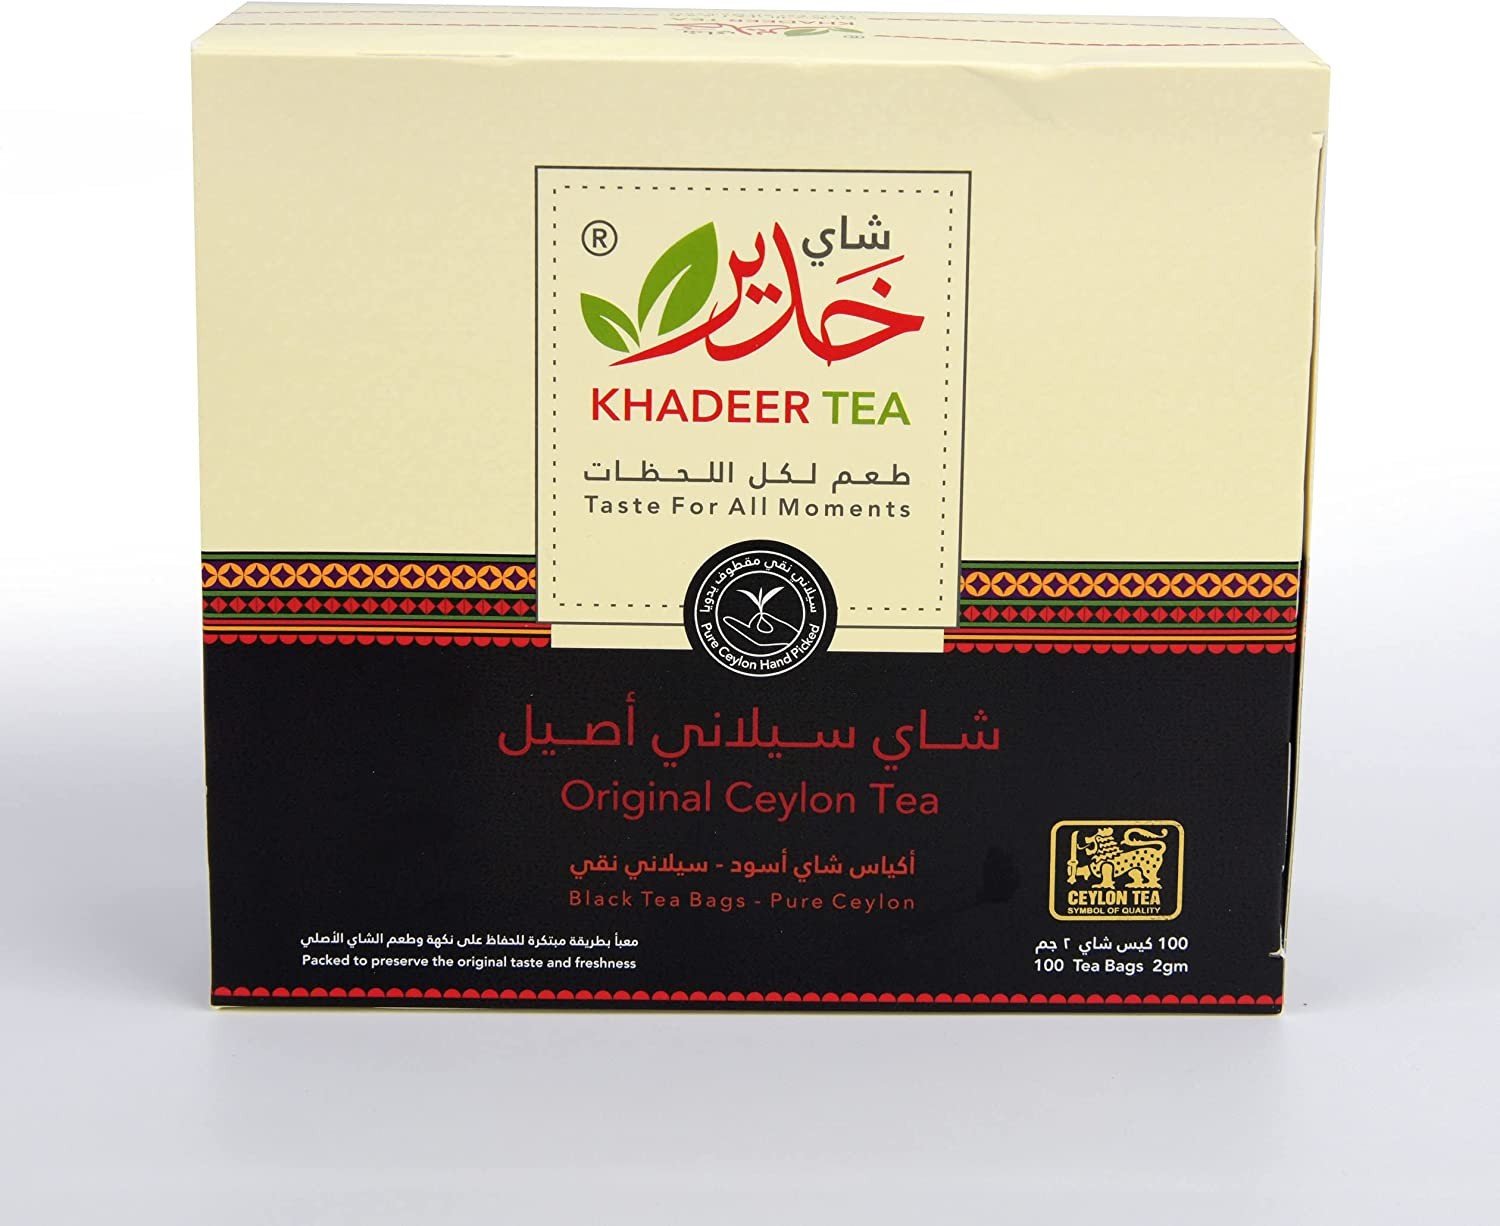 KHADEER TEA - ORIGINAL CEYLON TEA 100 BLACK TEA BAGS